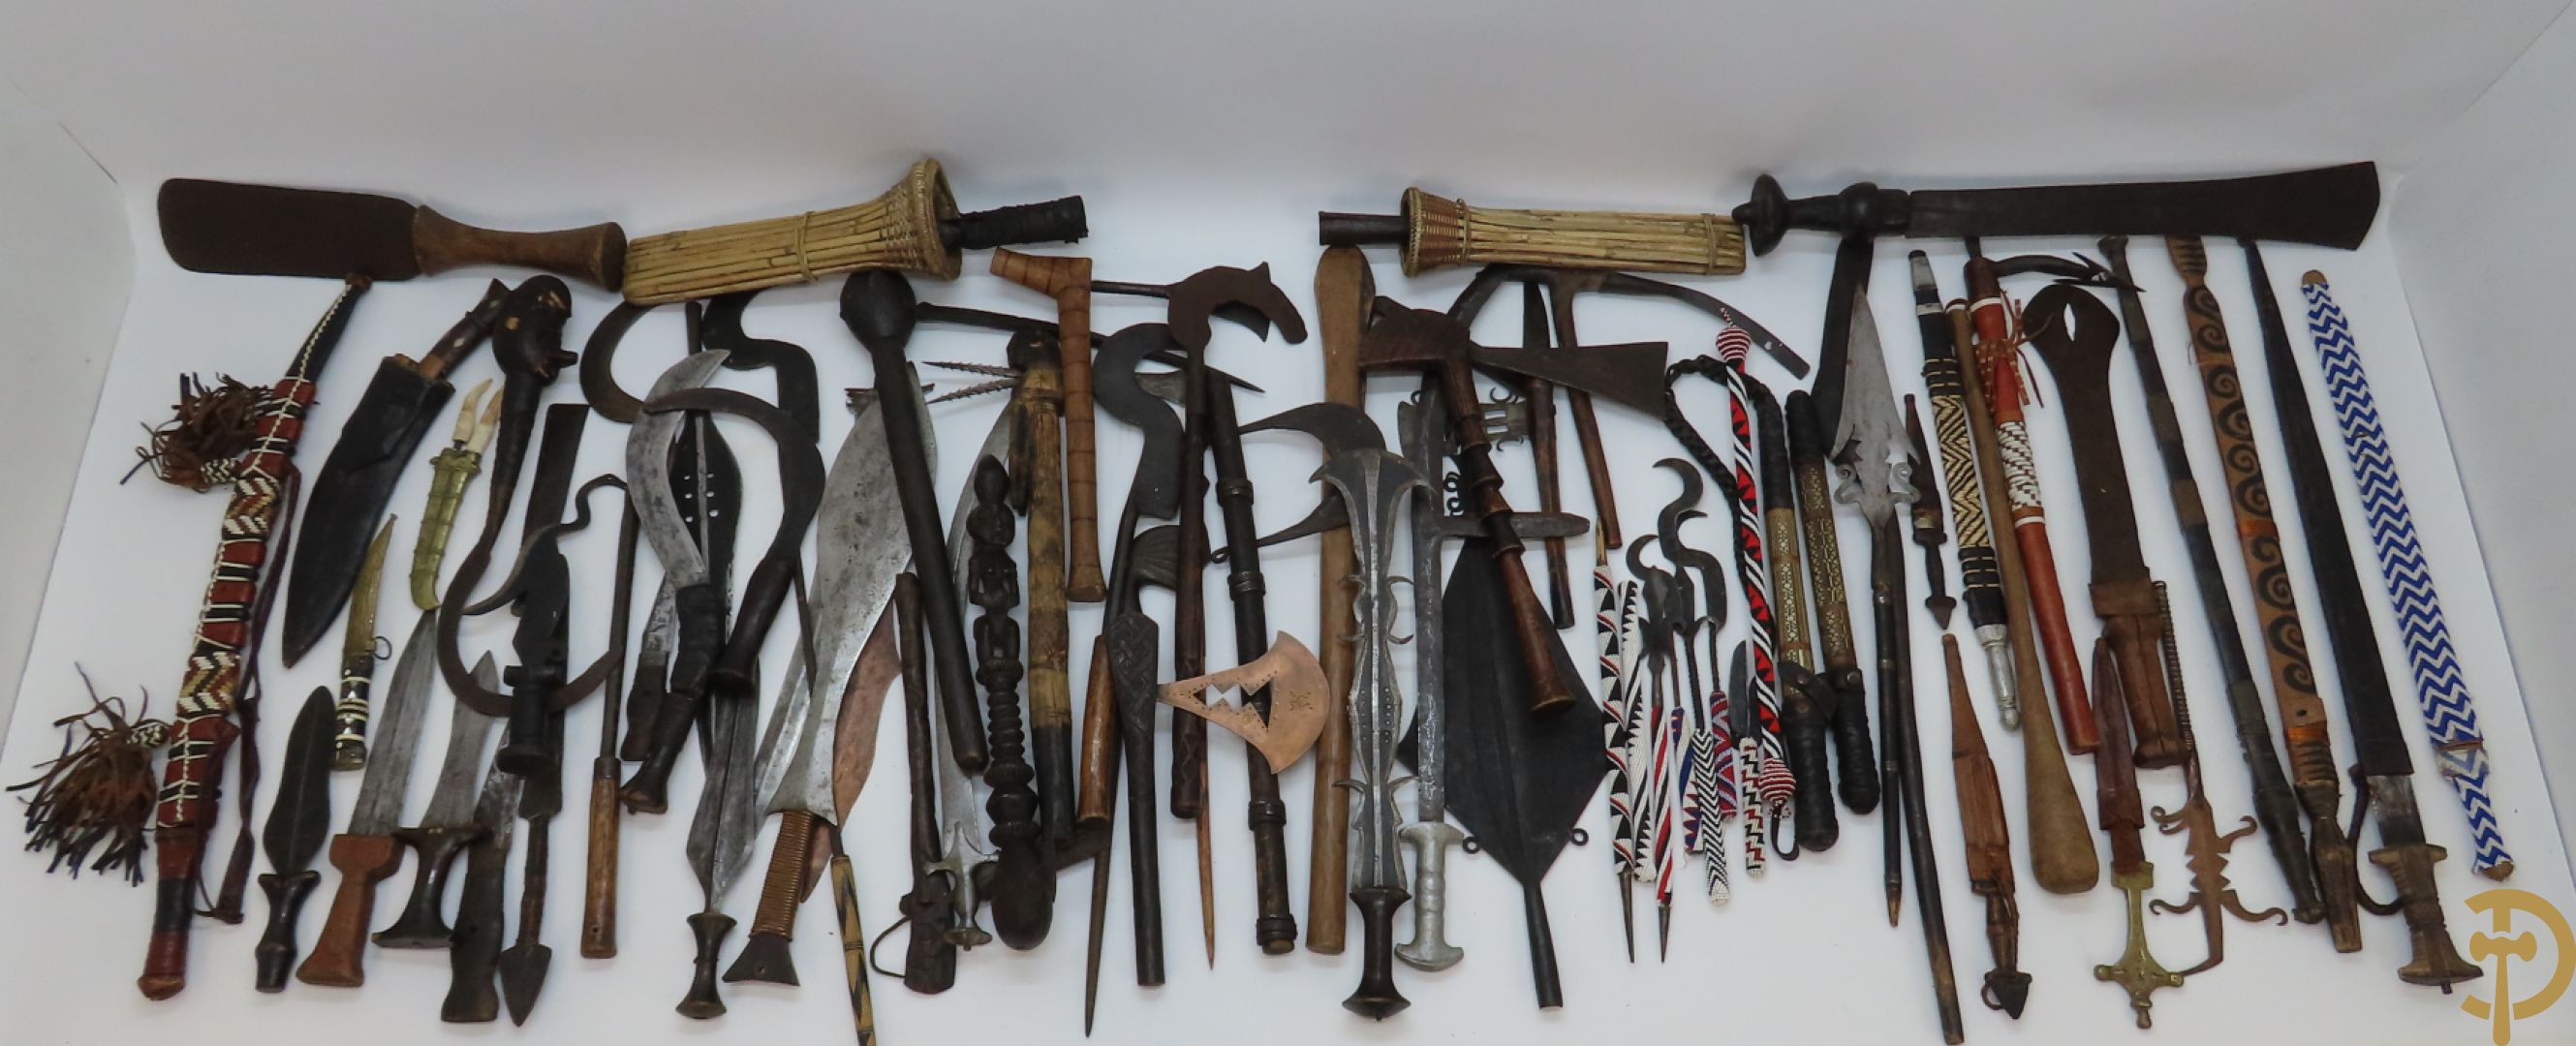 Lot Afrikaanse machetes, zwaarden en andere etnische wapens